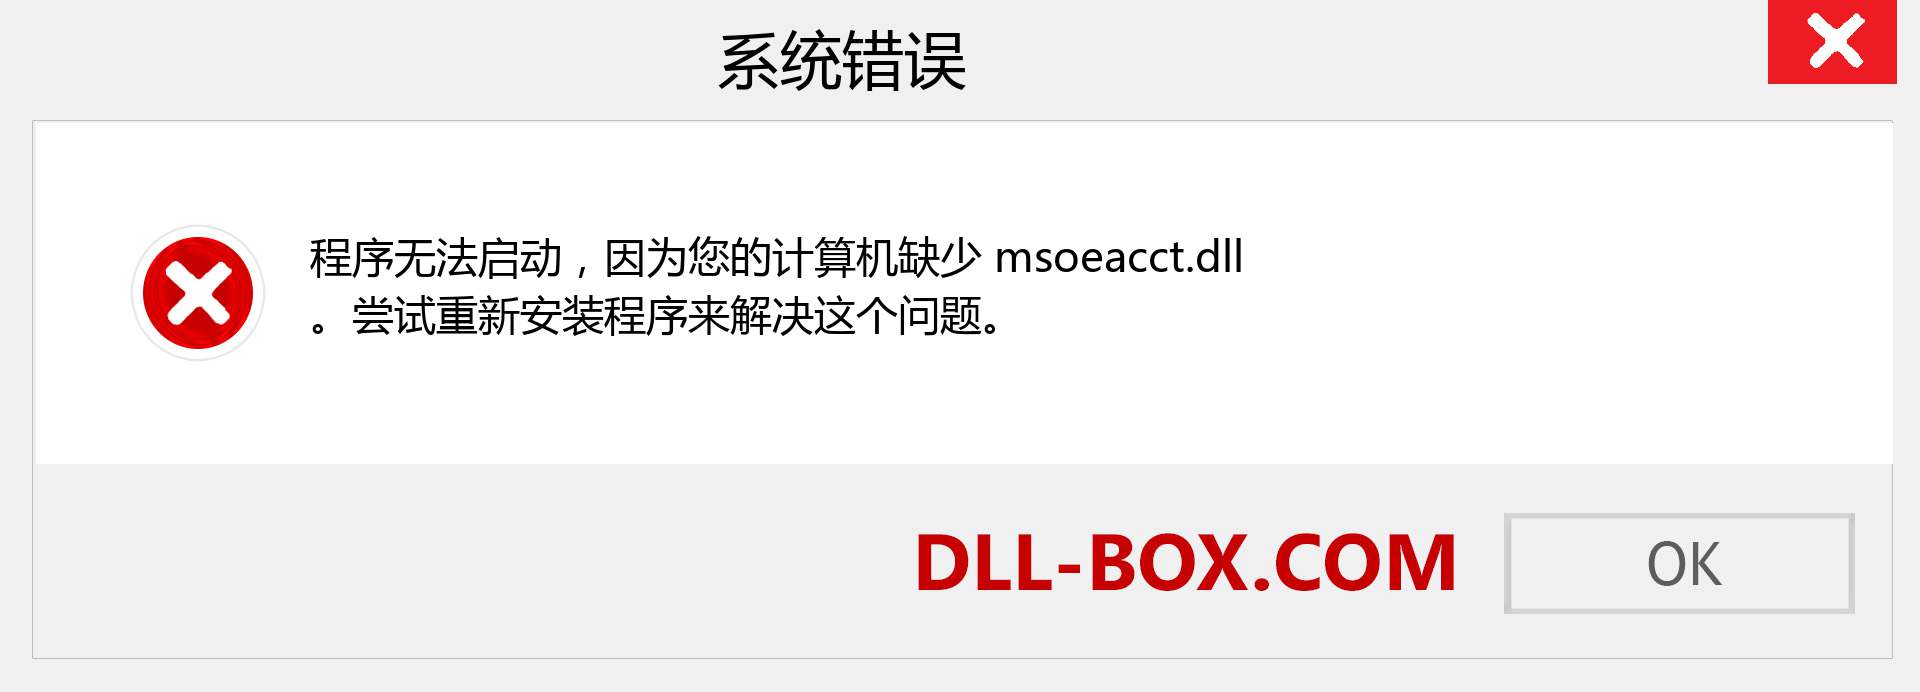 msoeacct.dll 文件丢失？。 适用于 Windows 7、8、10 的下载 - 修复 Windows、照片、图像上的 msoeacct dll 丢失错误